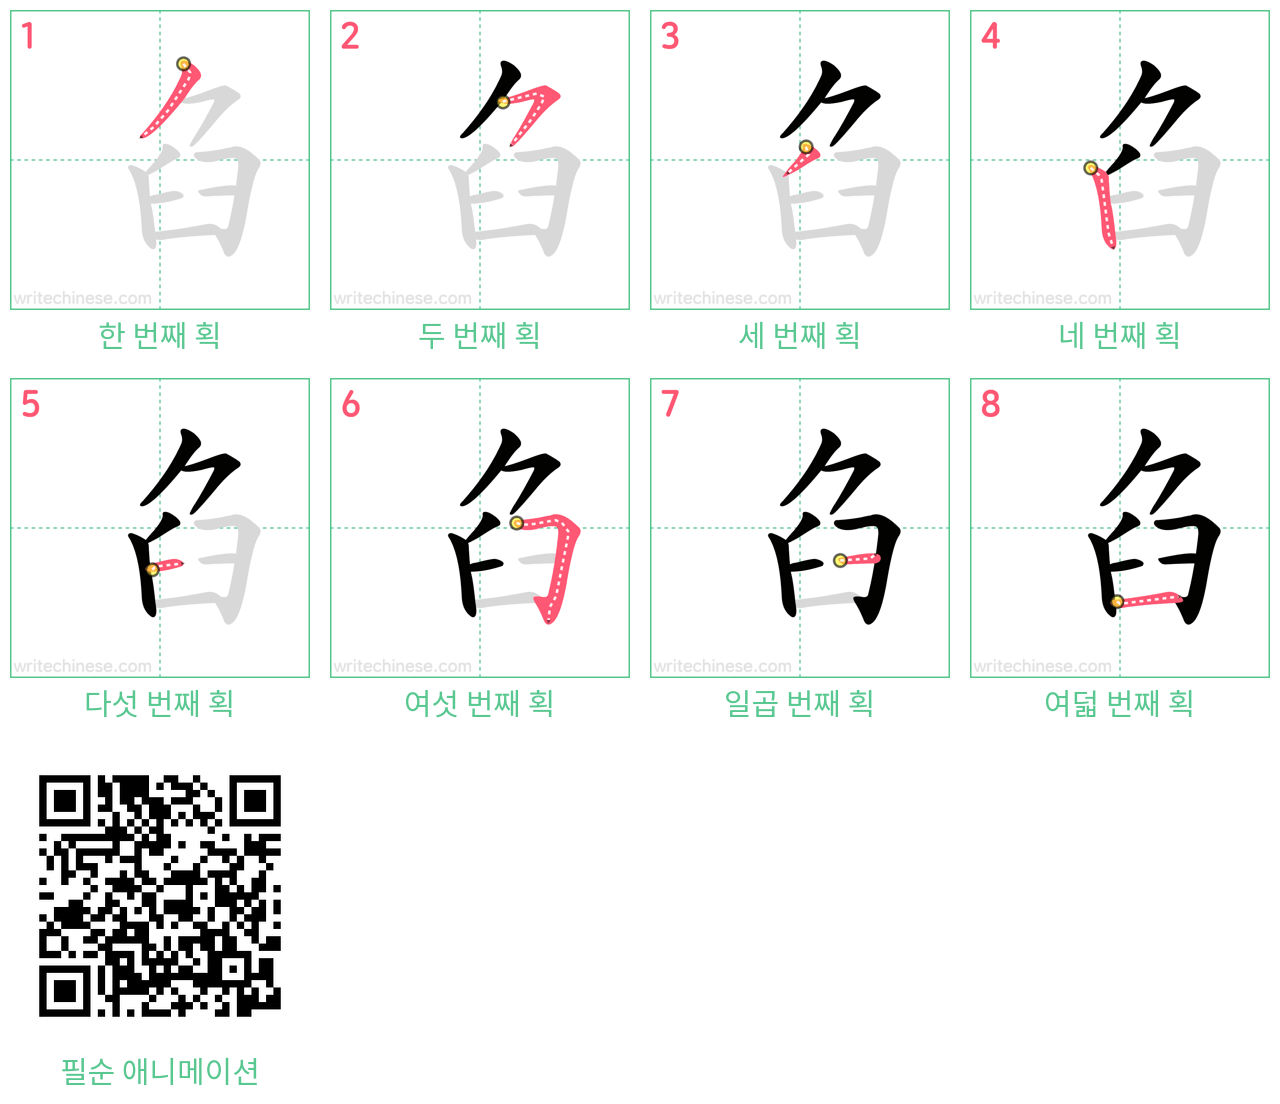 臽 step-by-step stroke order diagrams